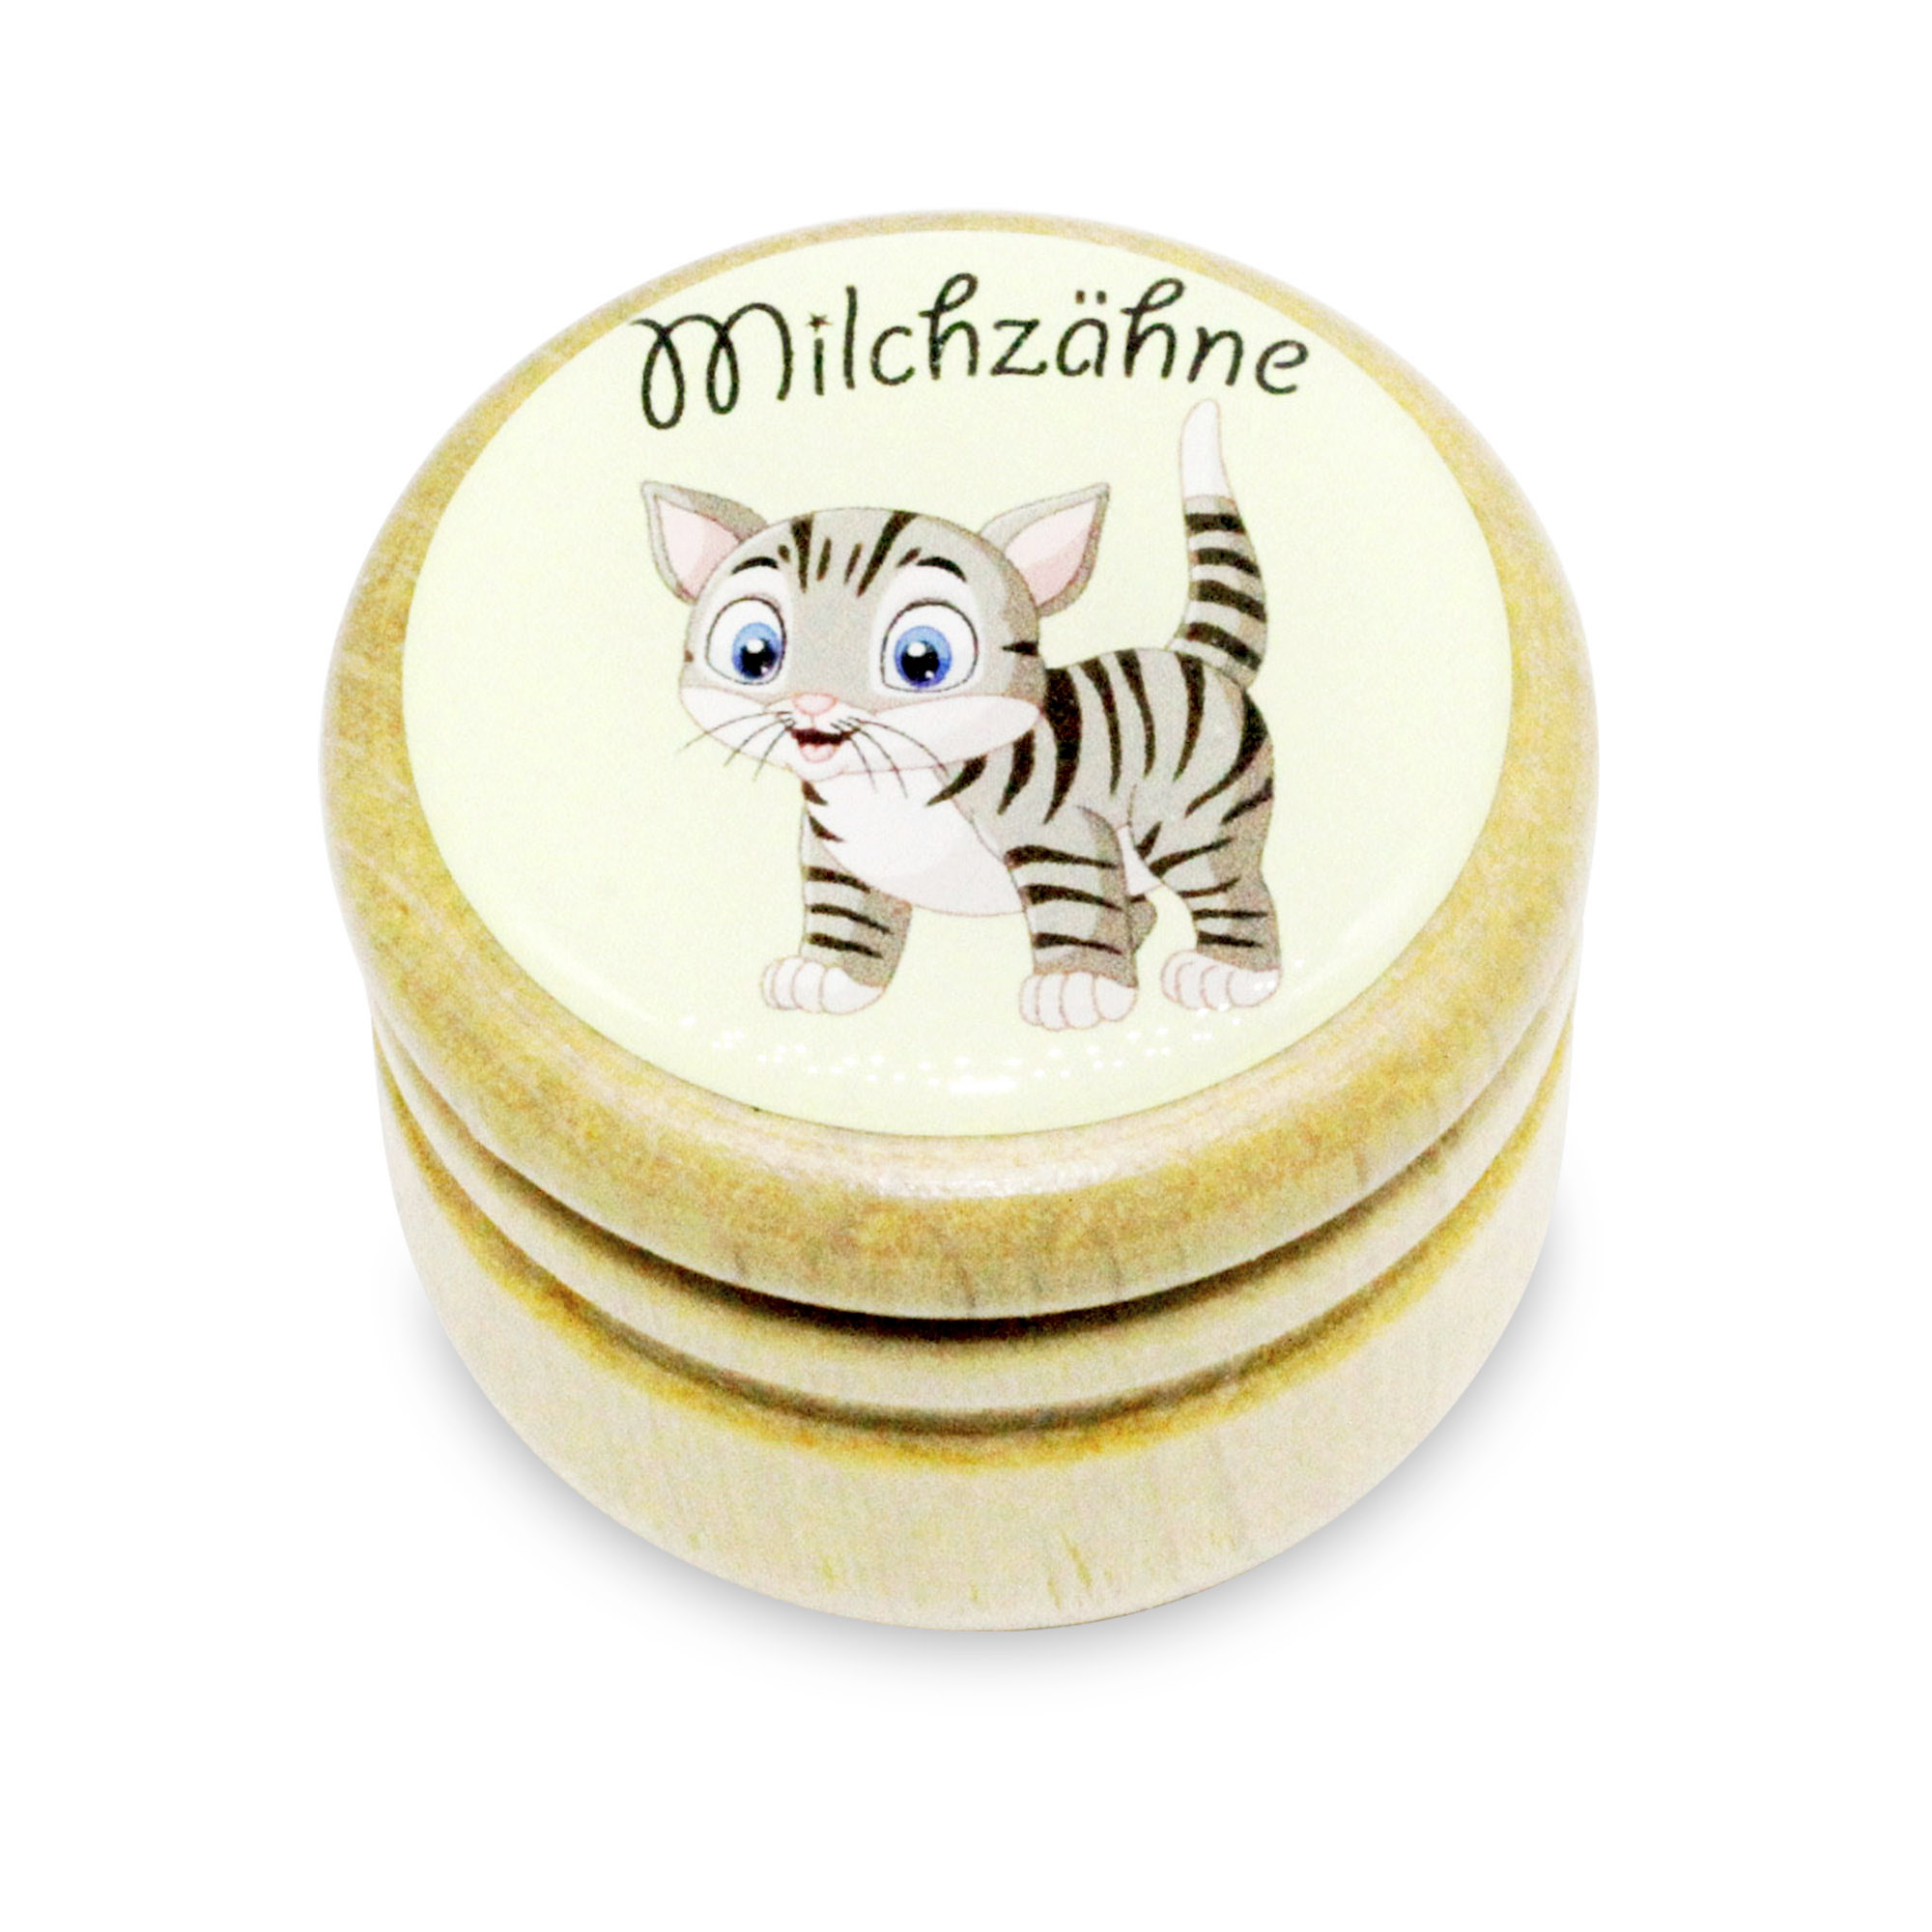 Milchzahndose Katze Zahndose Milchzähne Bilderdose aus Holz mit Drehverschluss 44 mm ( Katze )- 7019k